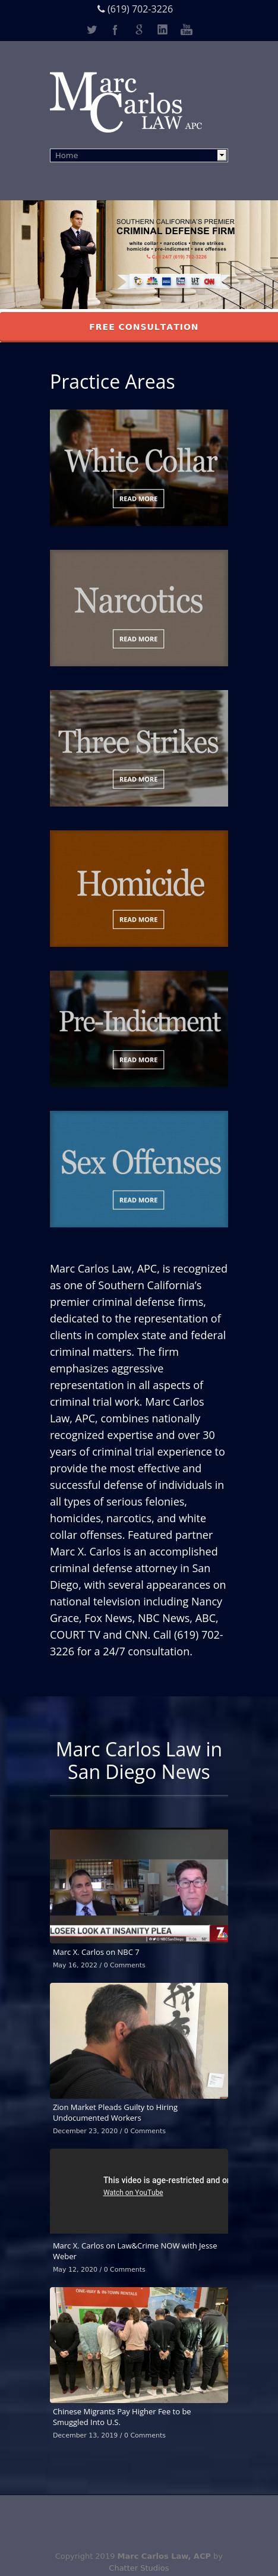 Marc Carlos - San Diego CA Lawyers